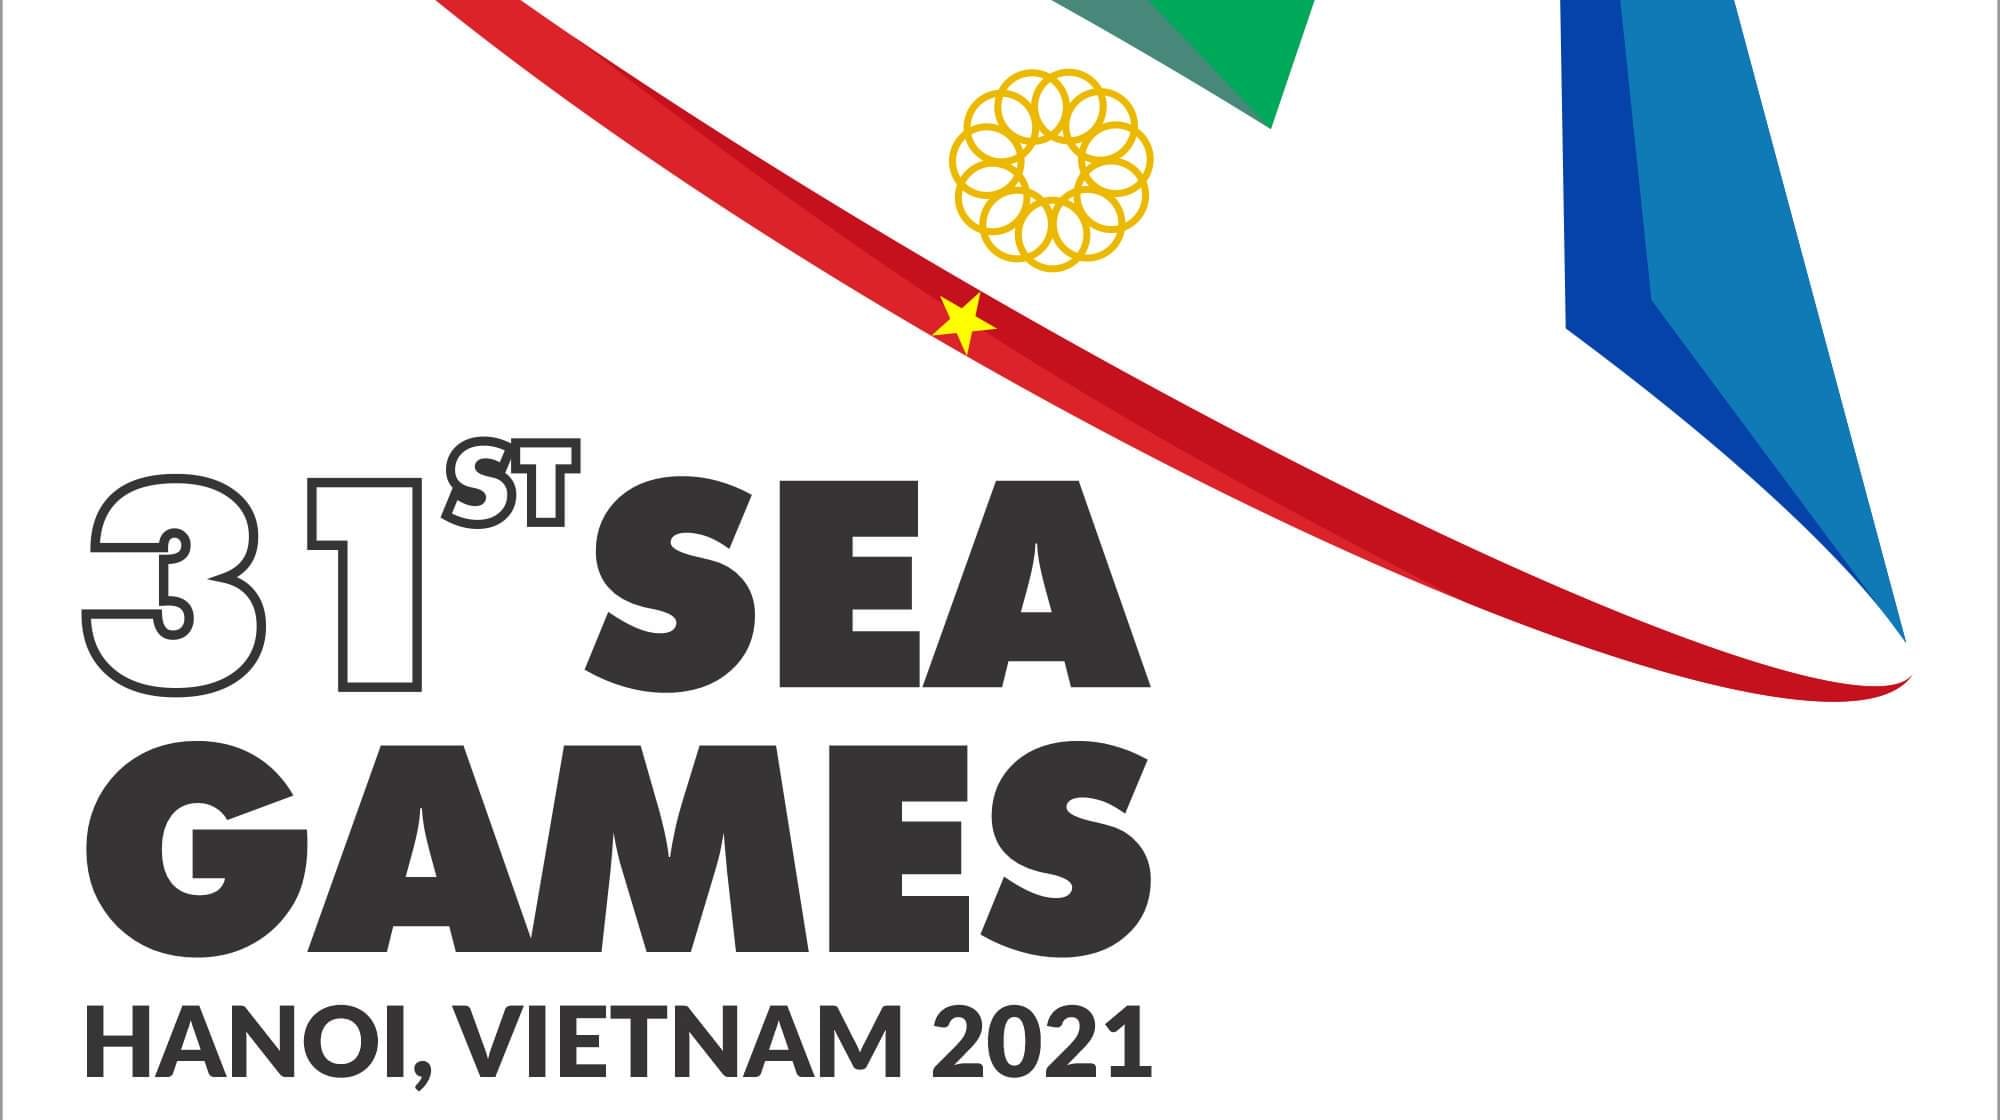 Hoãn tổ chức Đại hội Thể thao Đông Nam Á lần thứ 31 (SEA Games 31) tại Việt Nam năm 2021. (Nguồn ảnh: vietnamplus.vn)